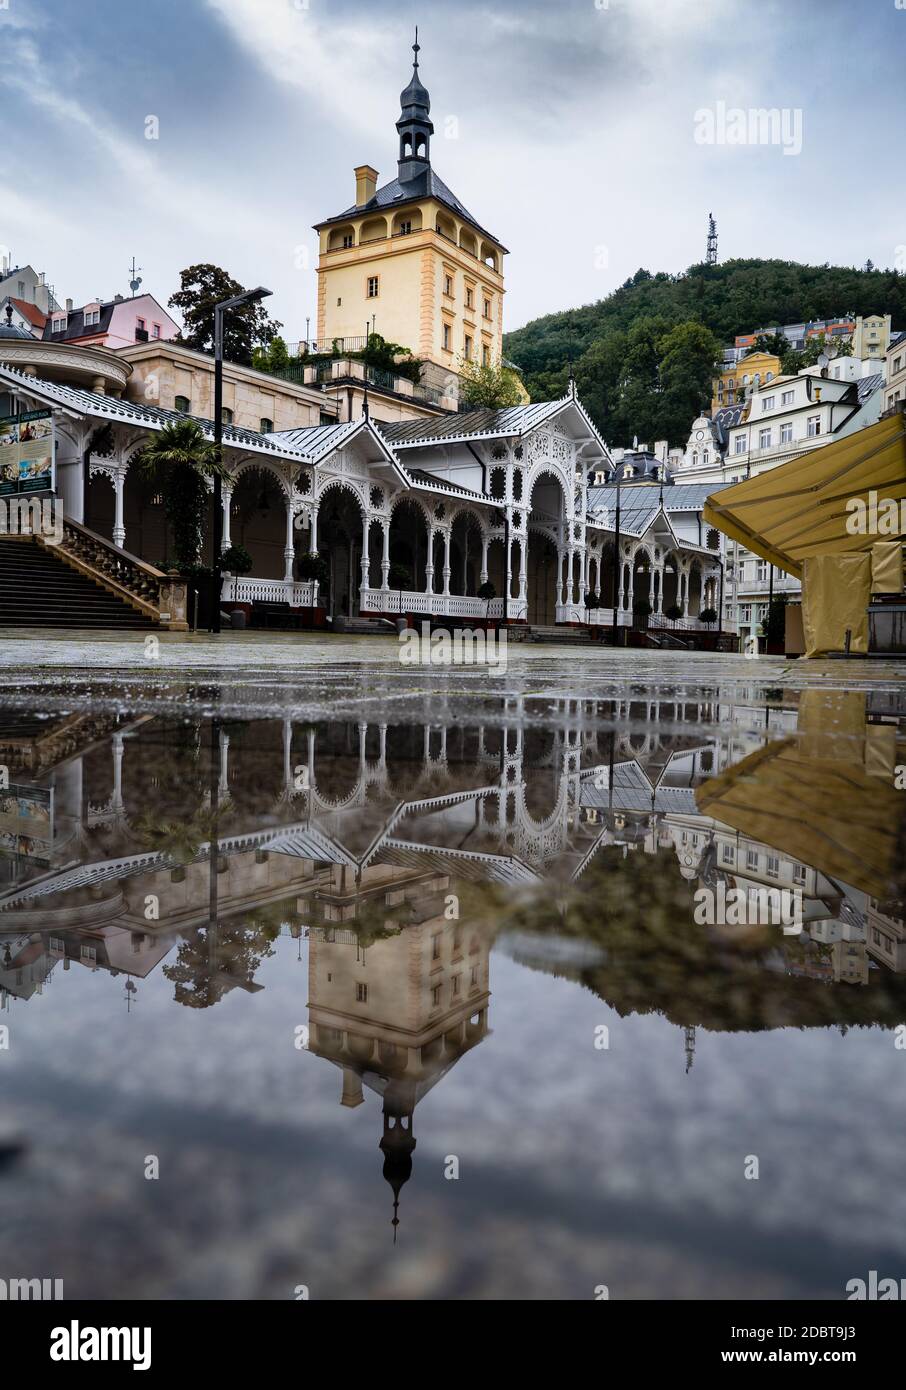 Reflet de la Colonnade du marché de Karlovy Vary, République tchèque après la pluie Banque D'Images